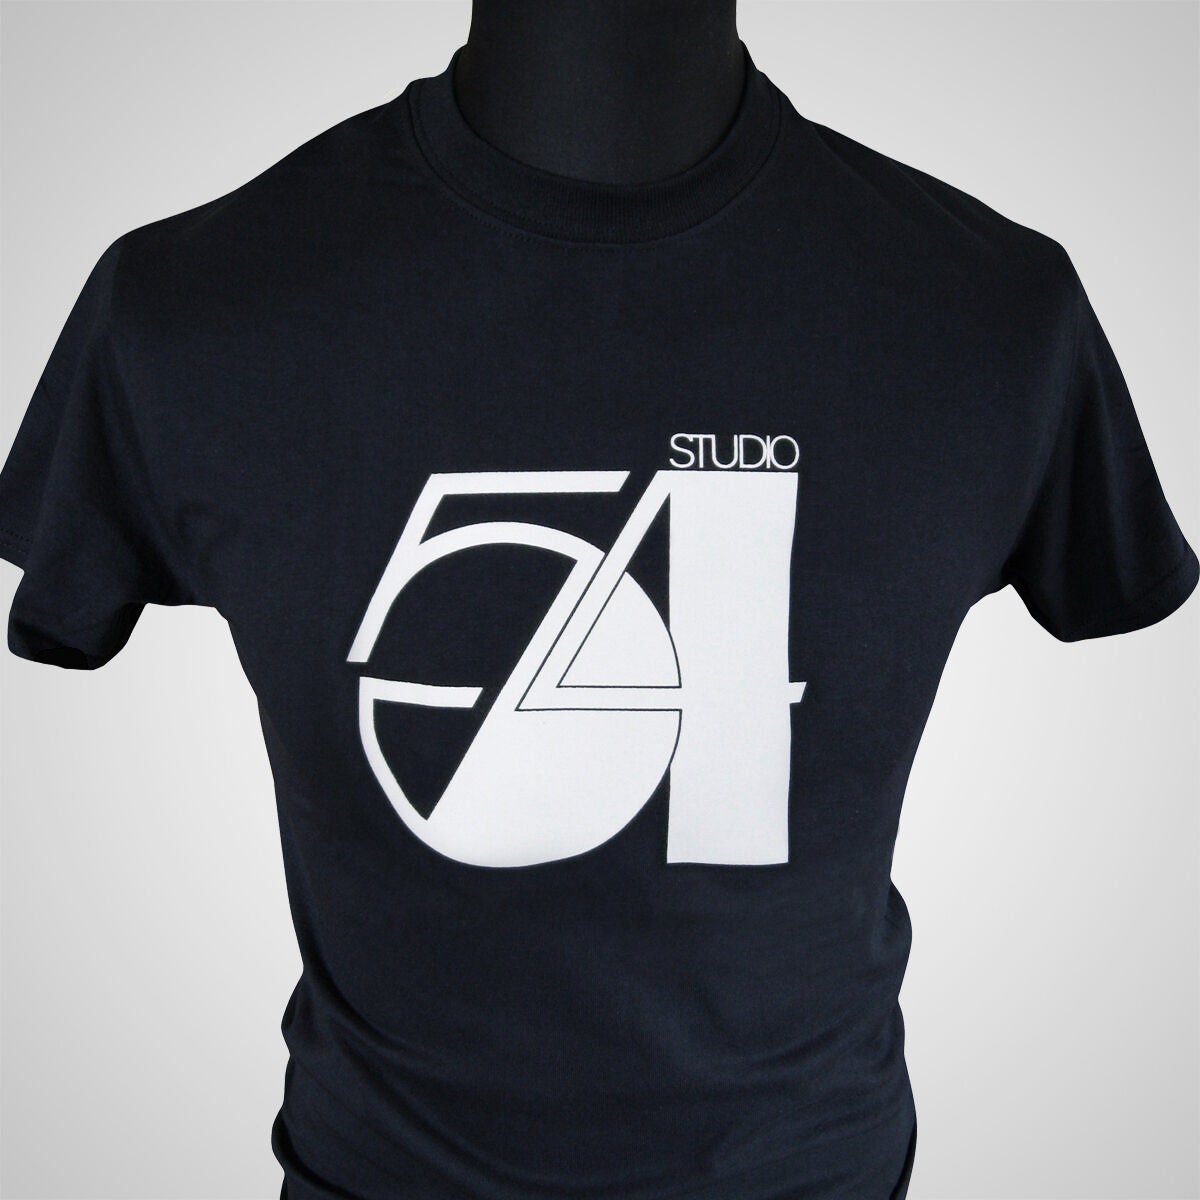 Studio 54 Shirt - Etsy